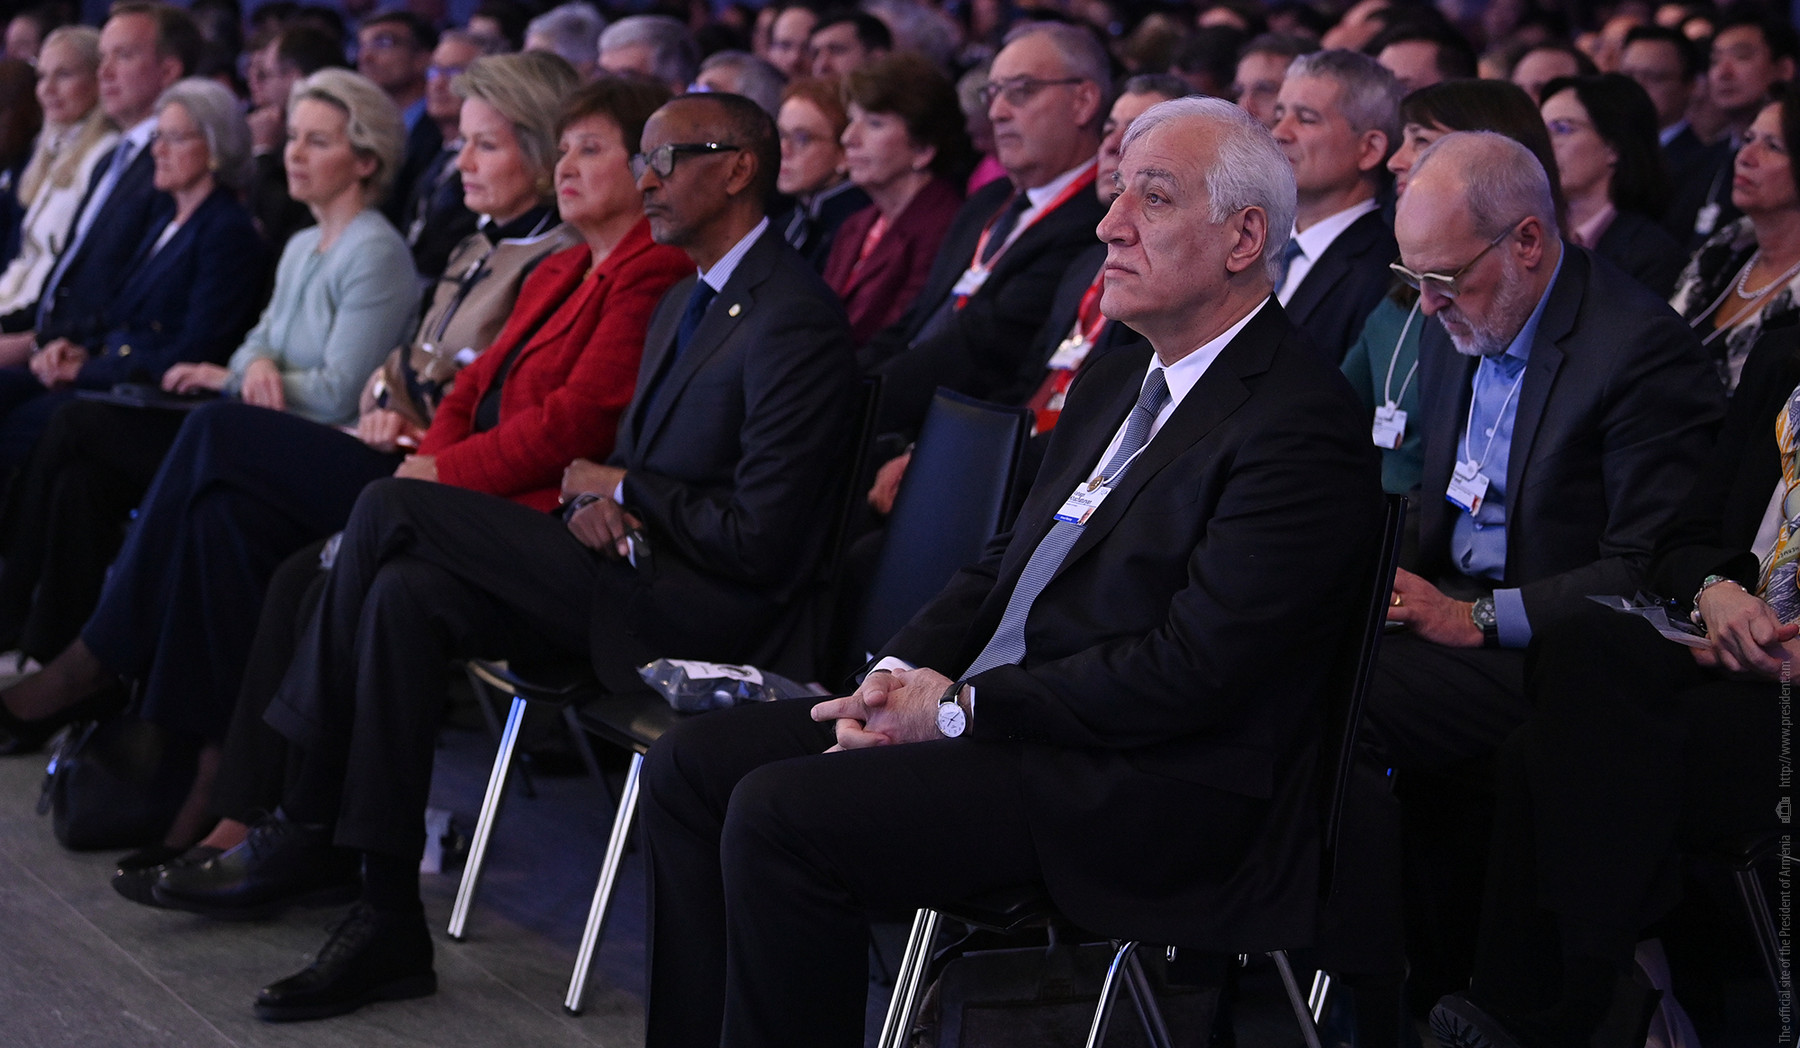 Վահագն Խաչատուրյանը մասնակցել է Համաշխարհային տնտեսական համաժողովի բացման արարողությանը